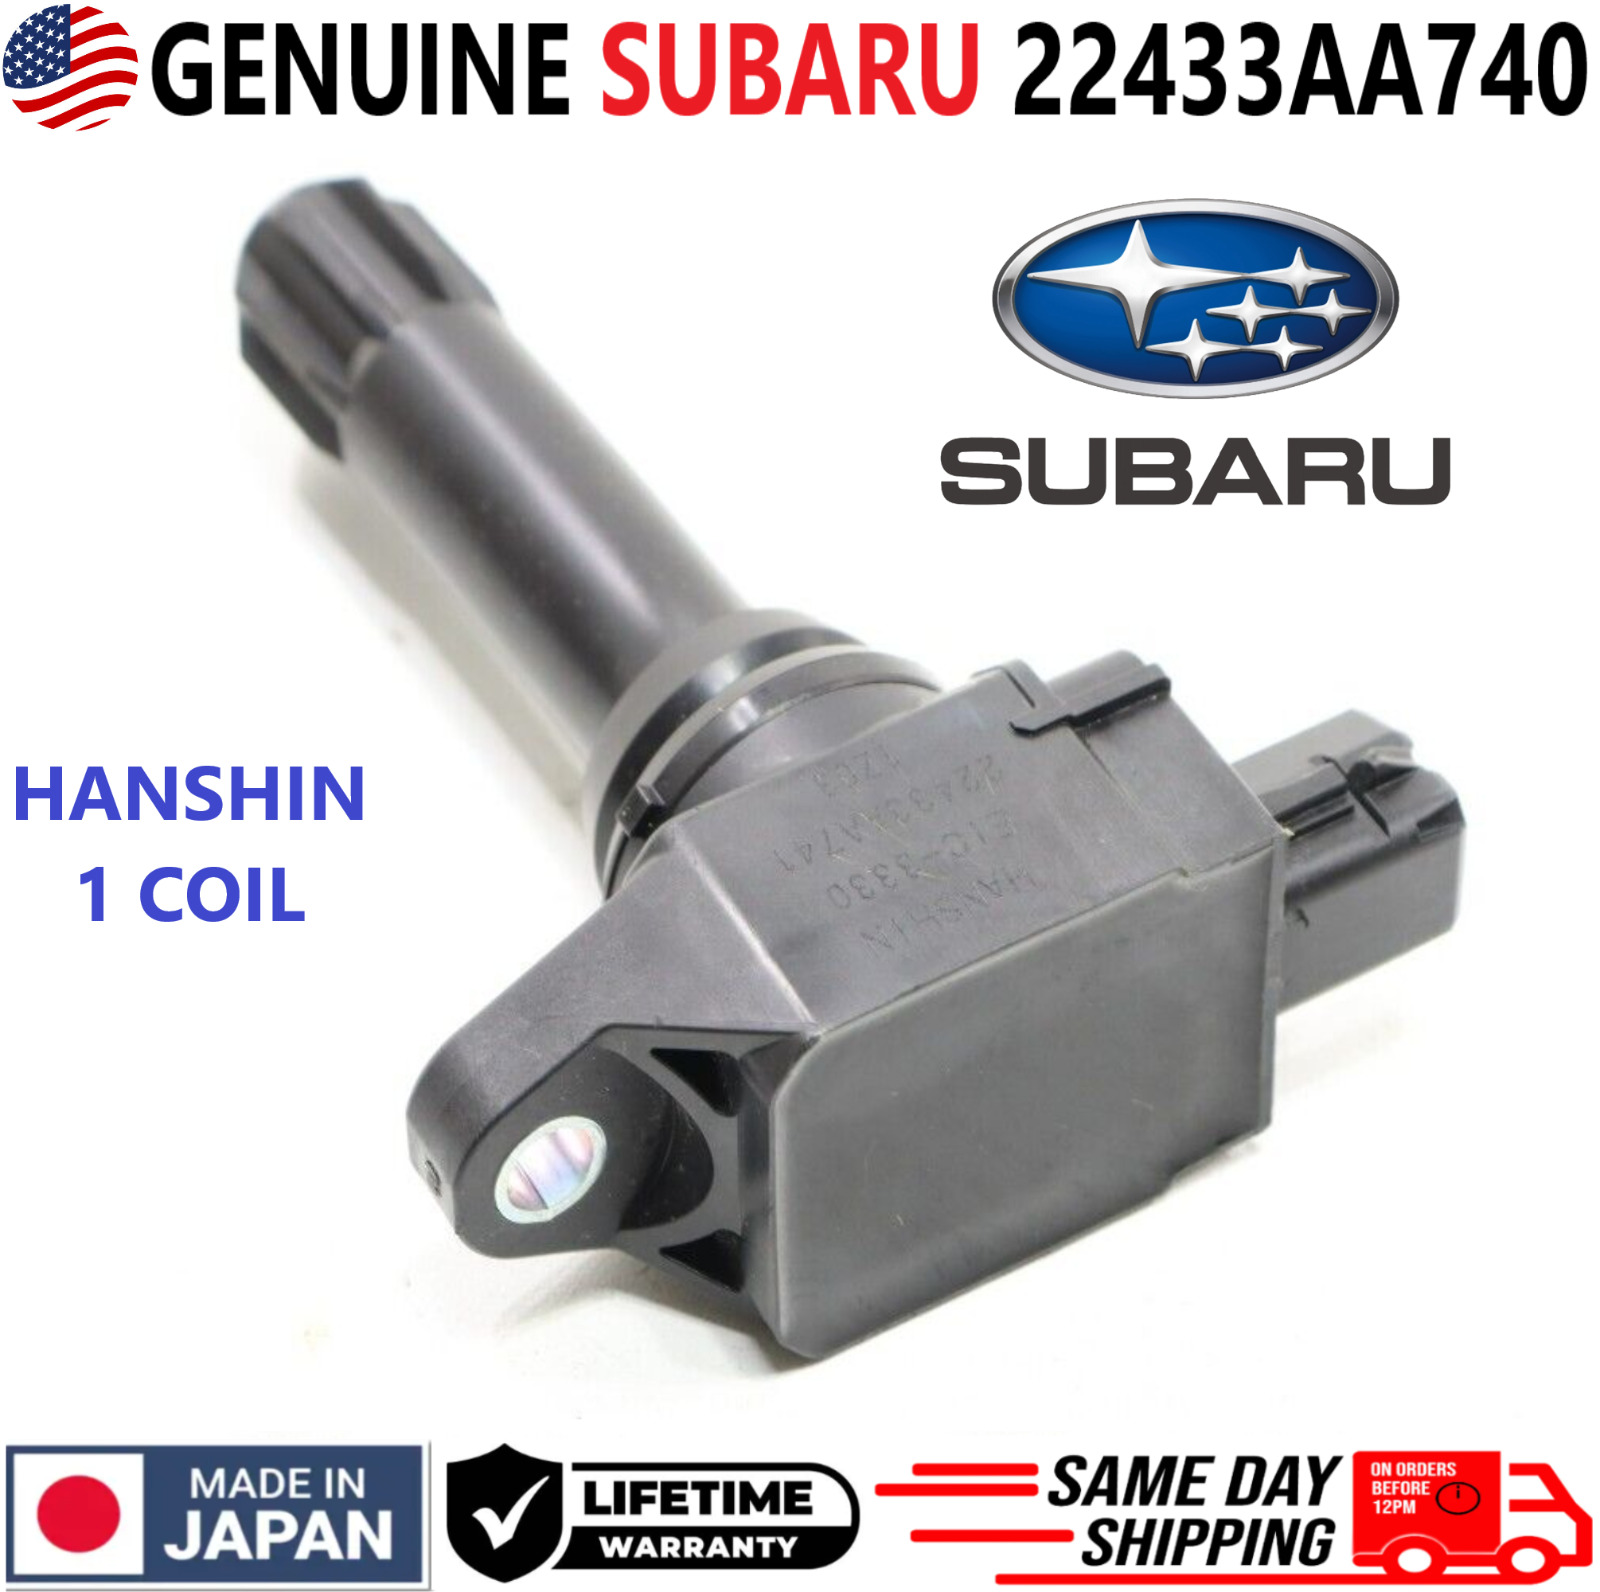 GENUINE SUBARU x1 Ignition Coil For 2015-2020 Subaru 2.0L 2.5L H4, 22433-AA740